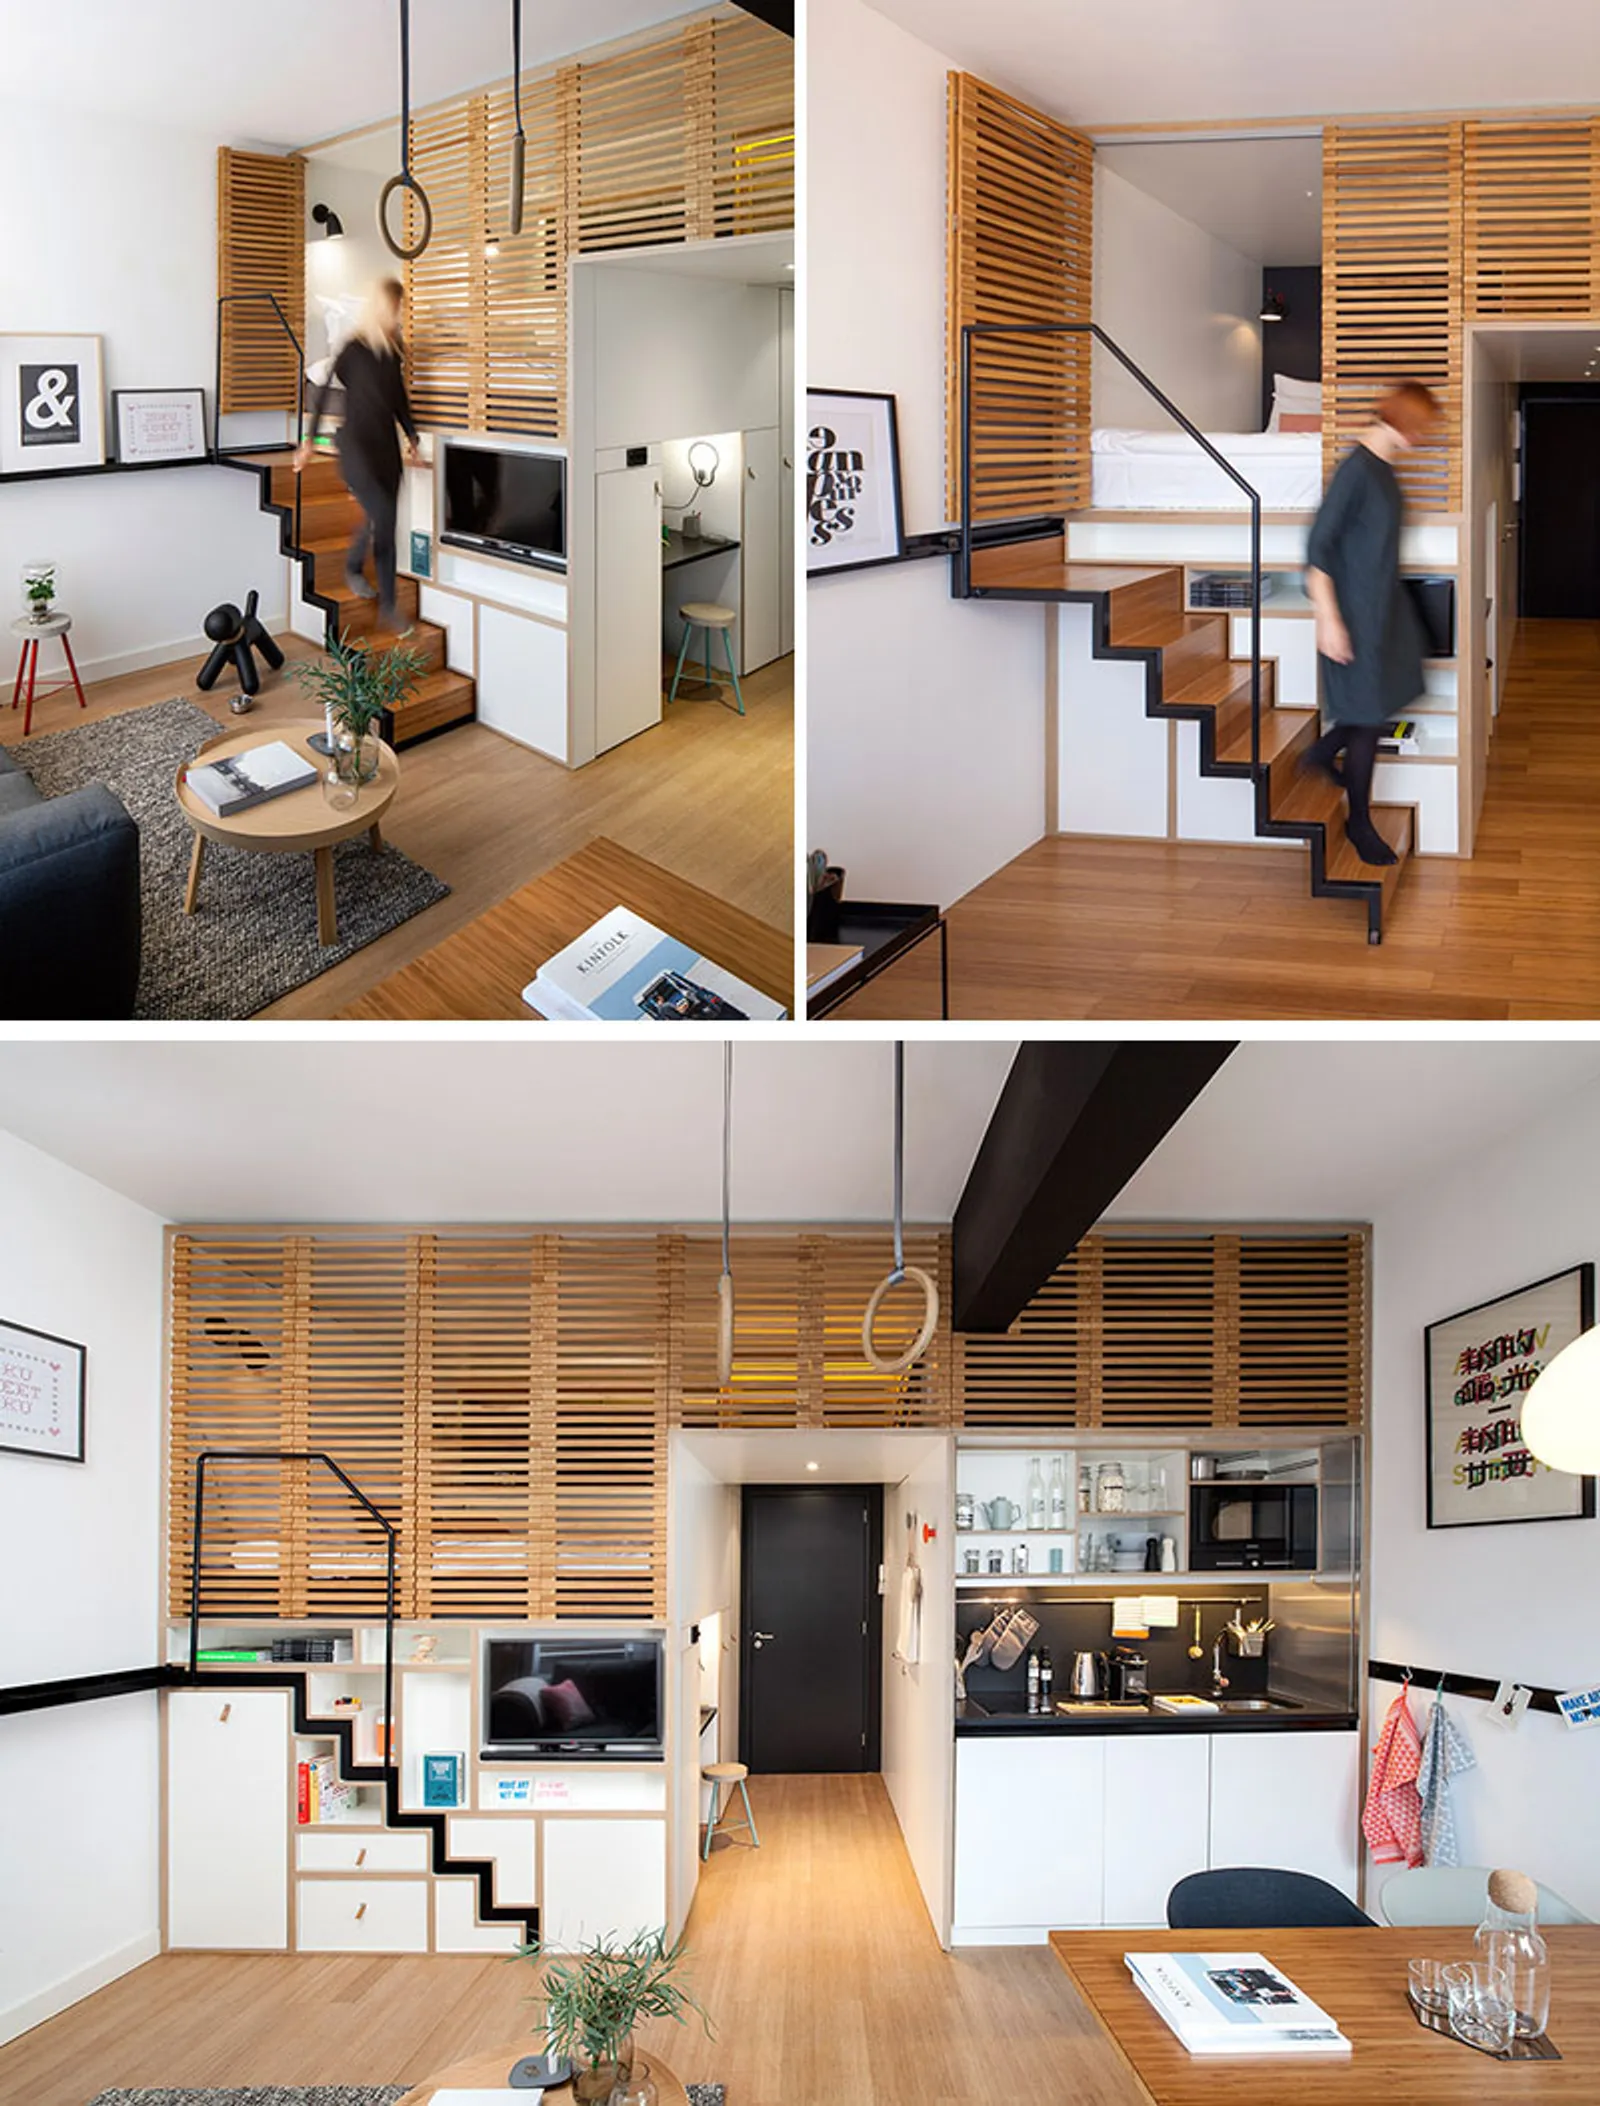 9 Inspirasi Desain Tangga bagi Rumah yang Sempit dan Sederhana